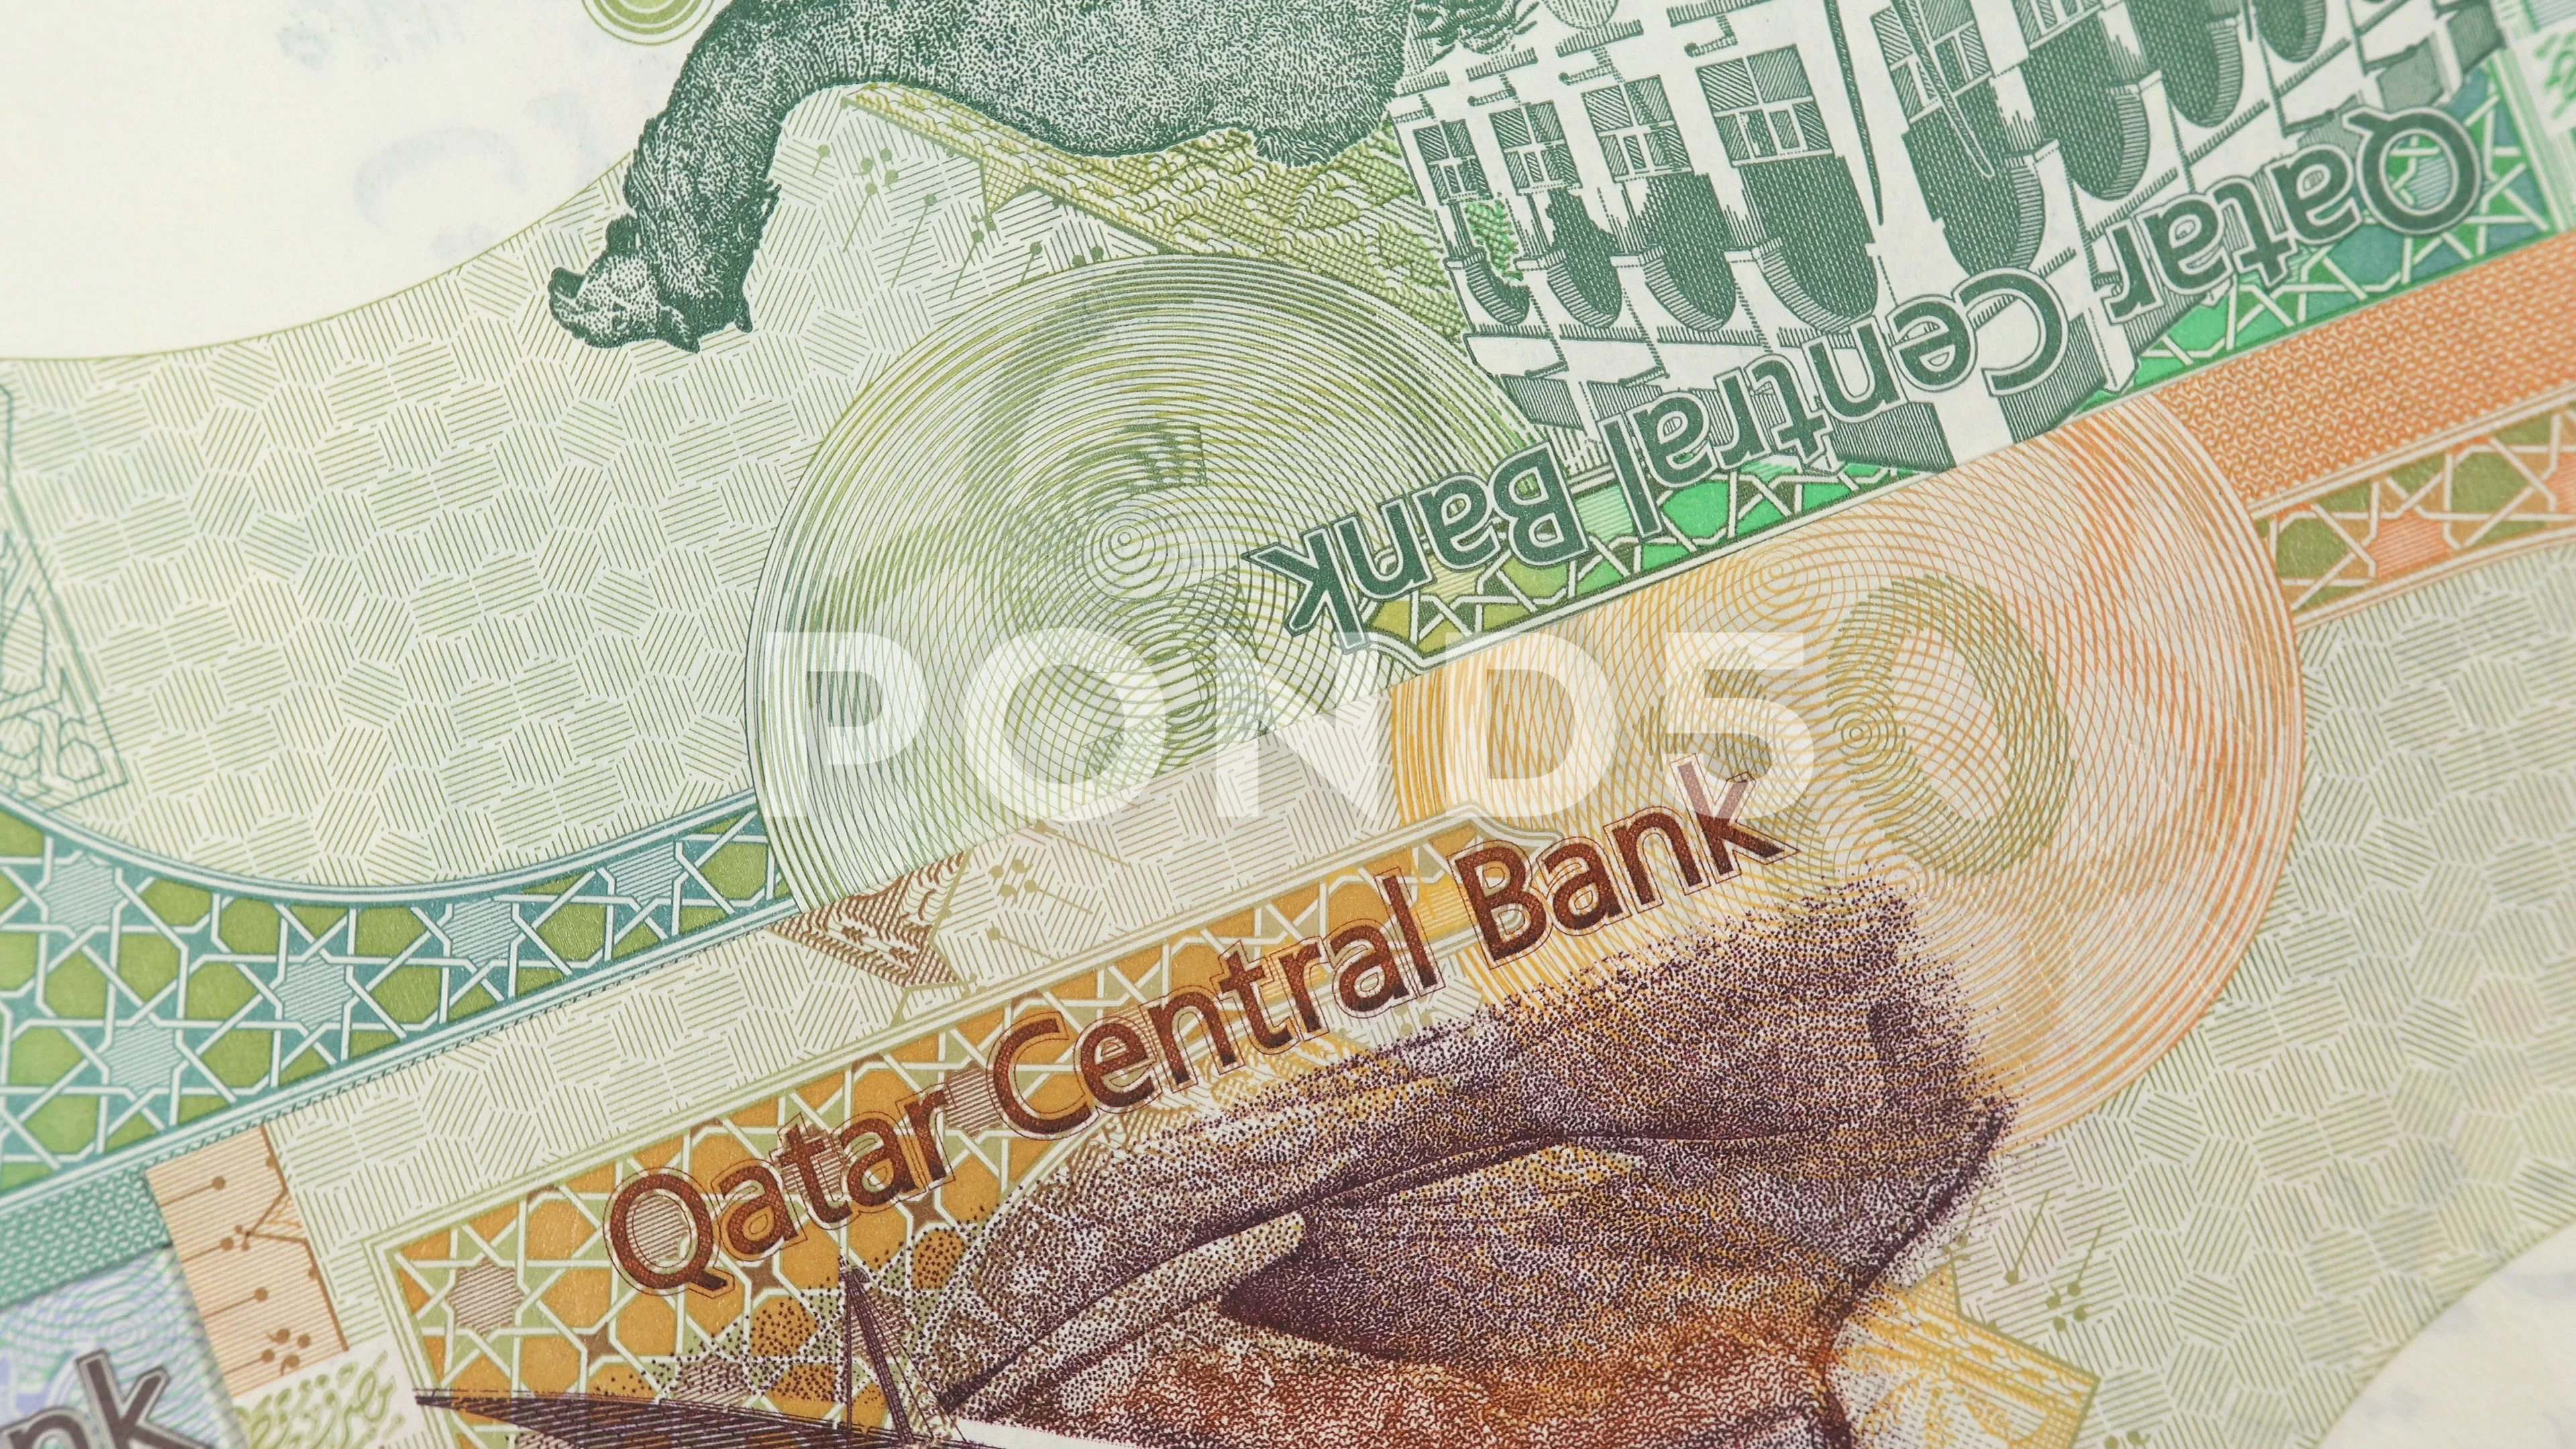 Qatar currency